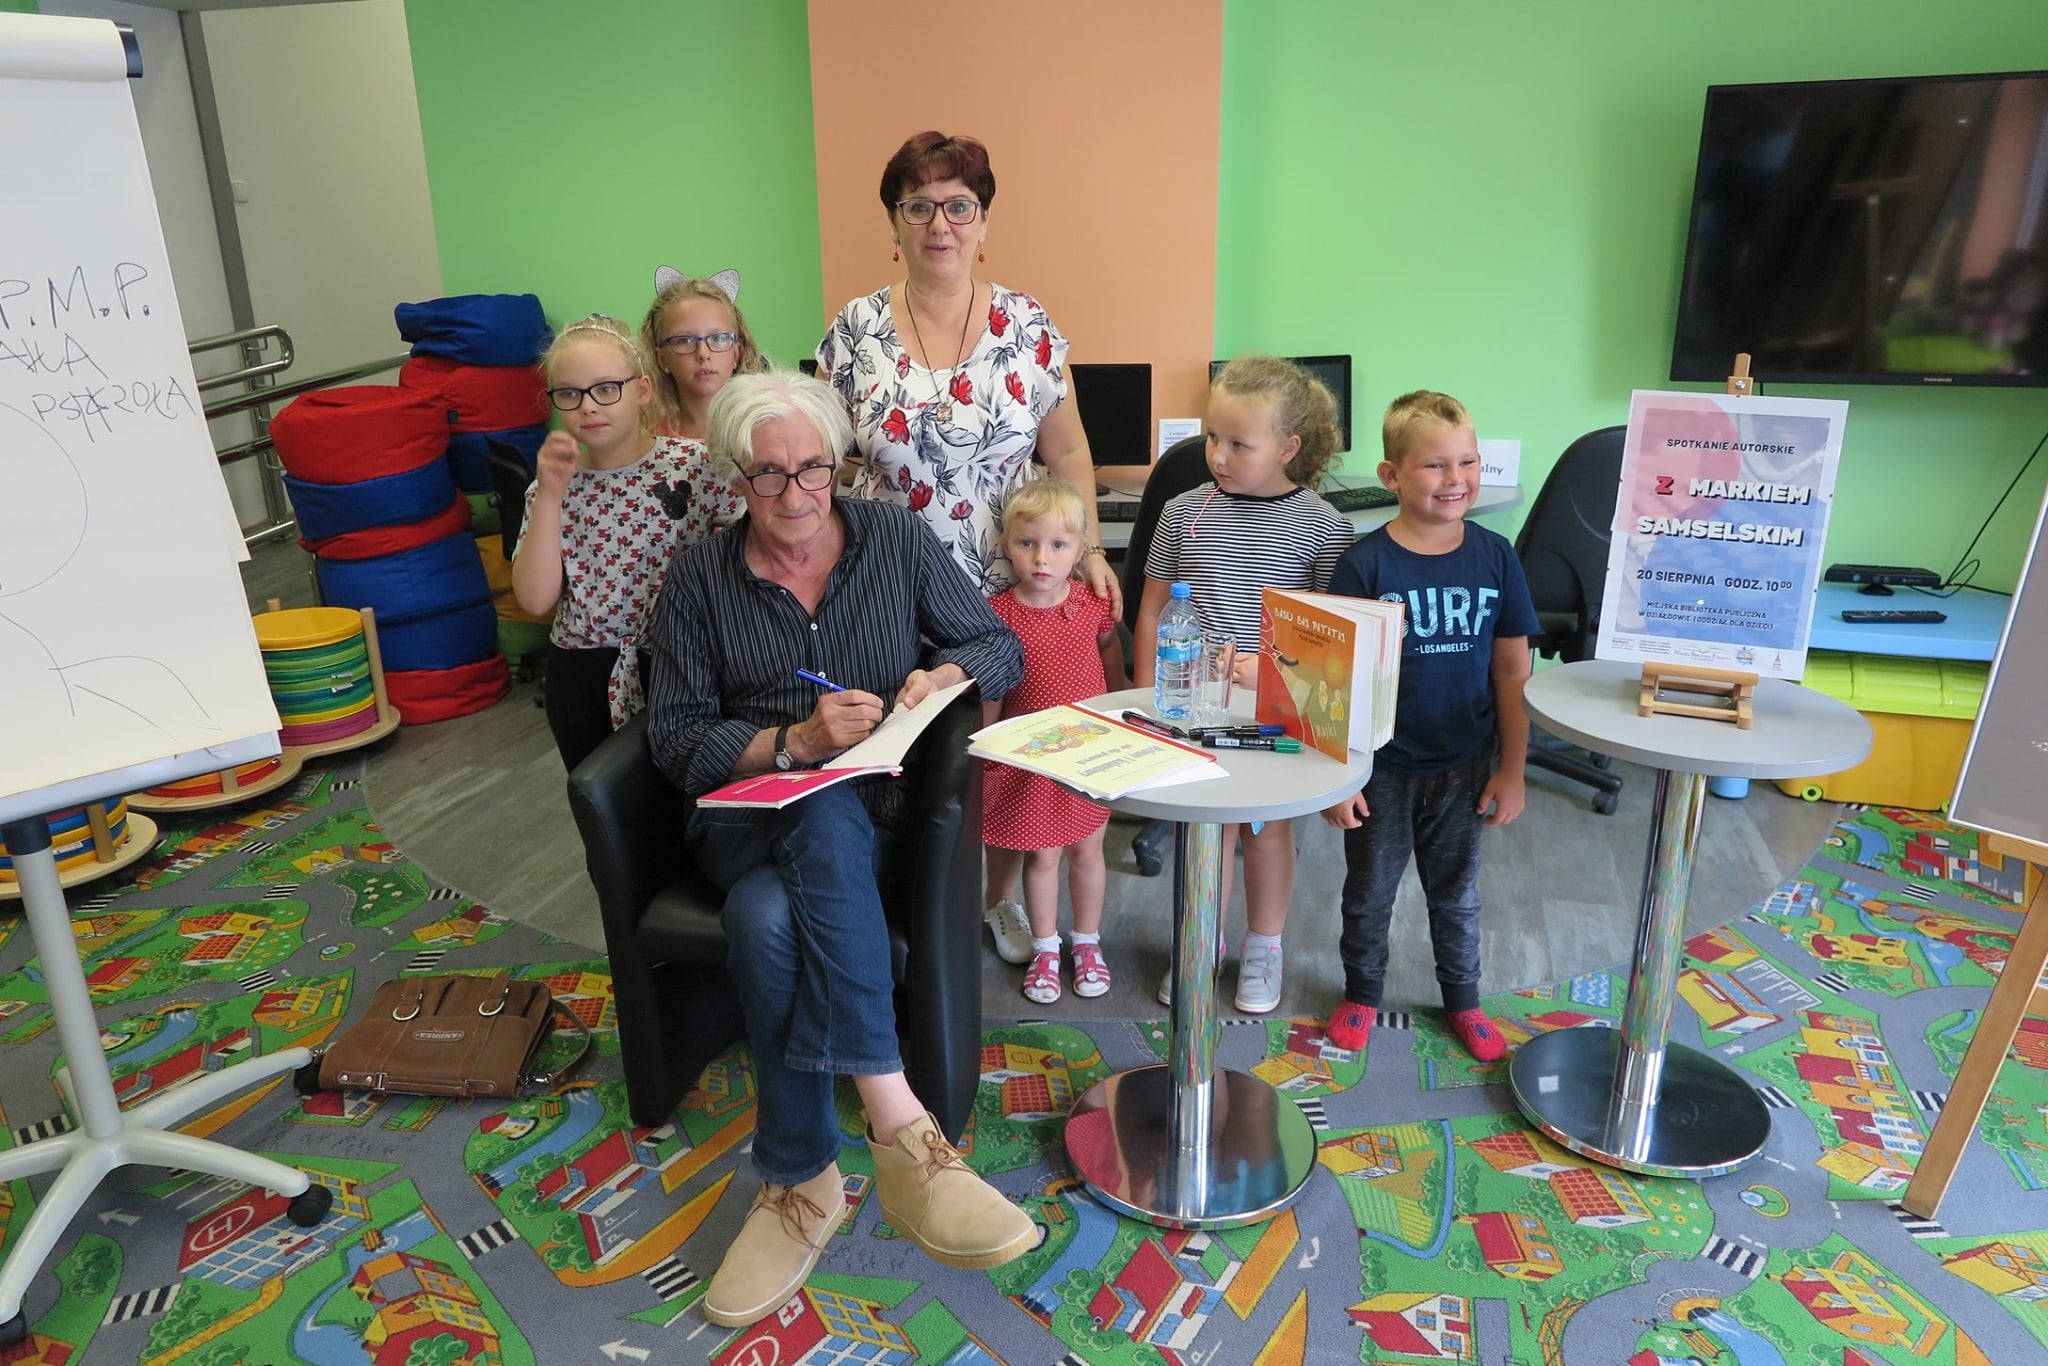 Wnętrze biblioteki, oddział dla dzieci. Na fotelu autor Marek Samselski obok pięcioro dzieci i opiekun.